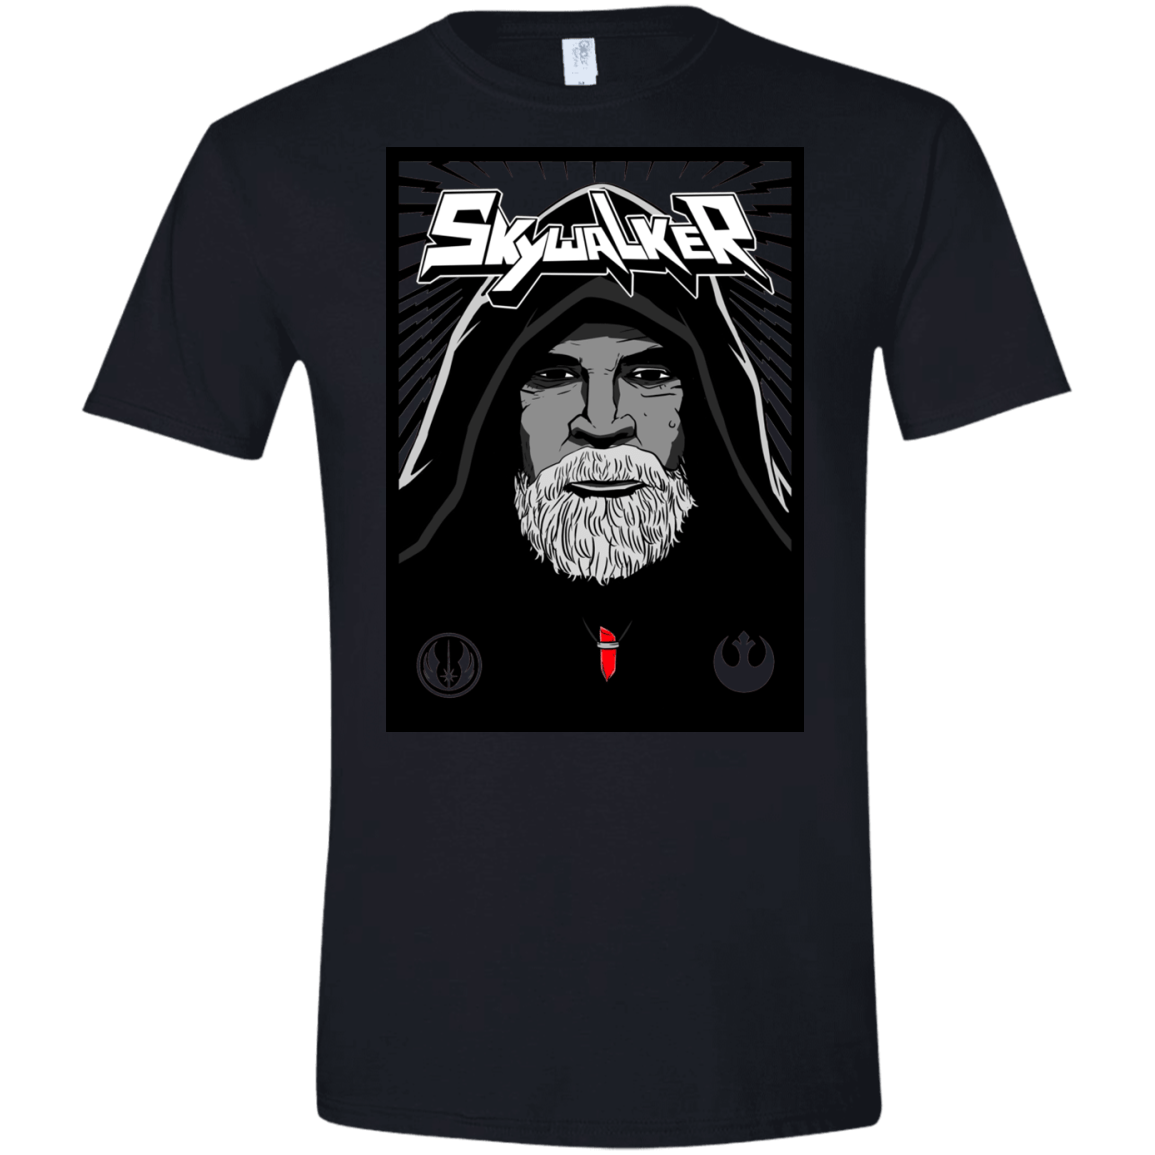 T-Shirts Black / X-Small Luke B Men's Semi-Fitted Softstyle